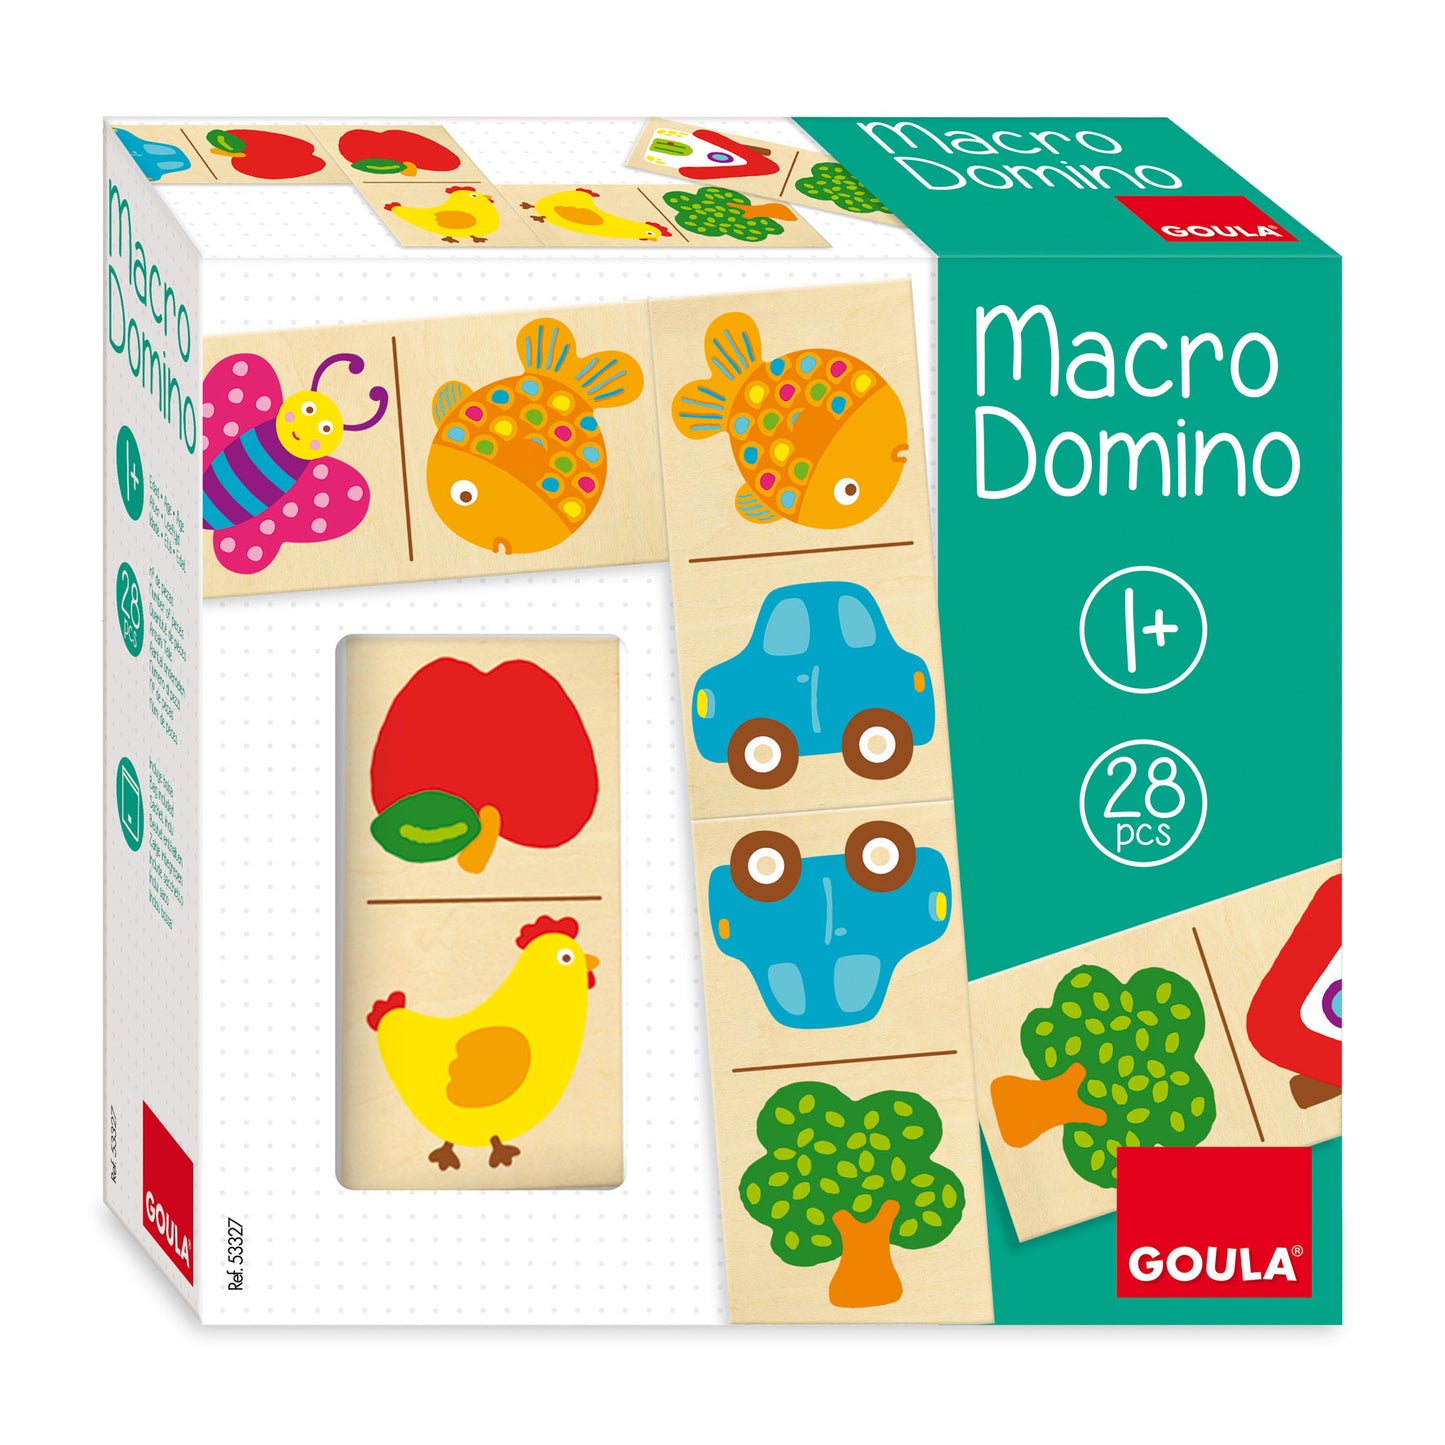 Goula Macro Domino Game Large Size